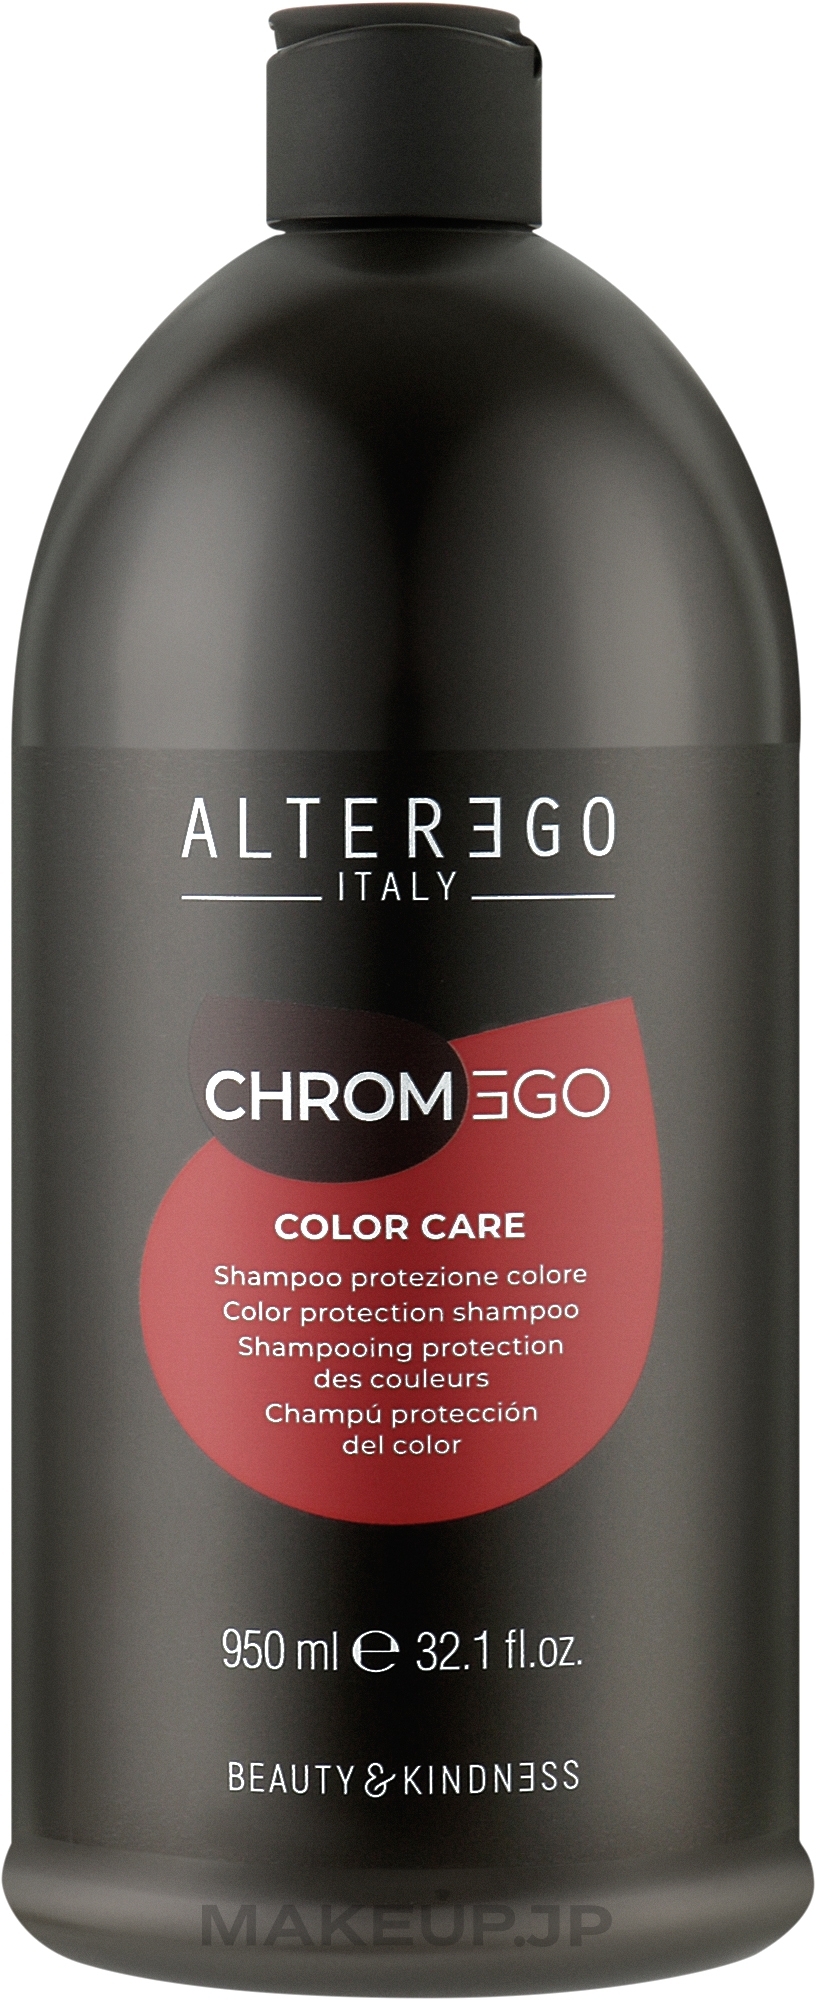 Shampoo for Colored Hair - Alter Ego ChromEgo Color Care Shampoo — photo 950 ml